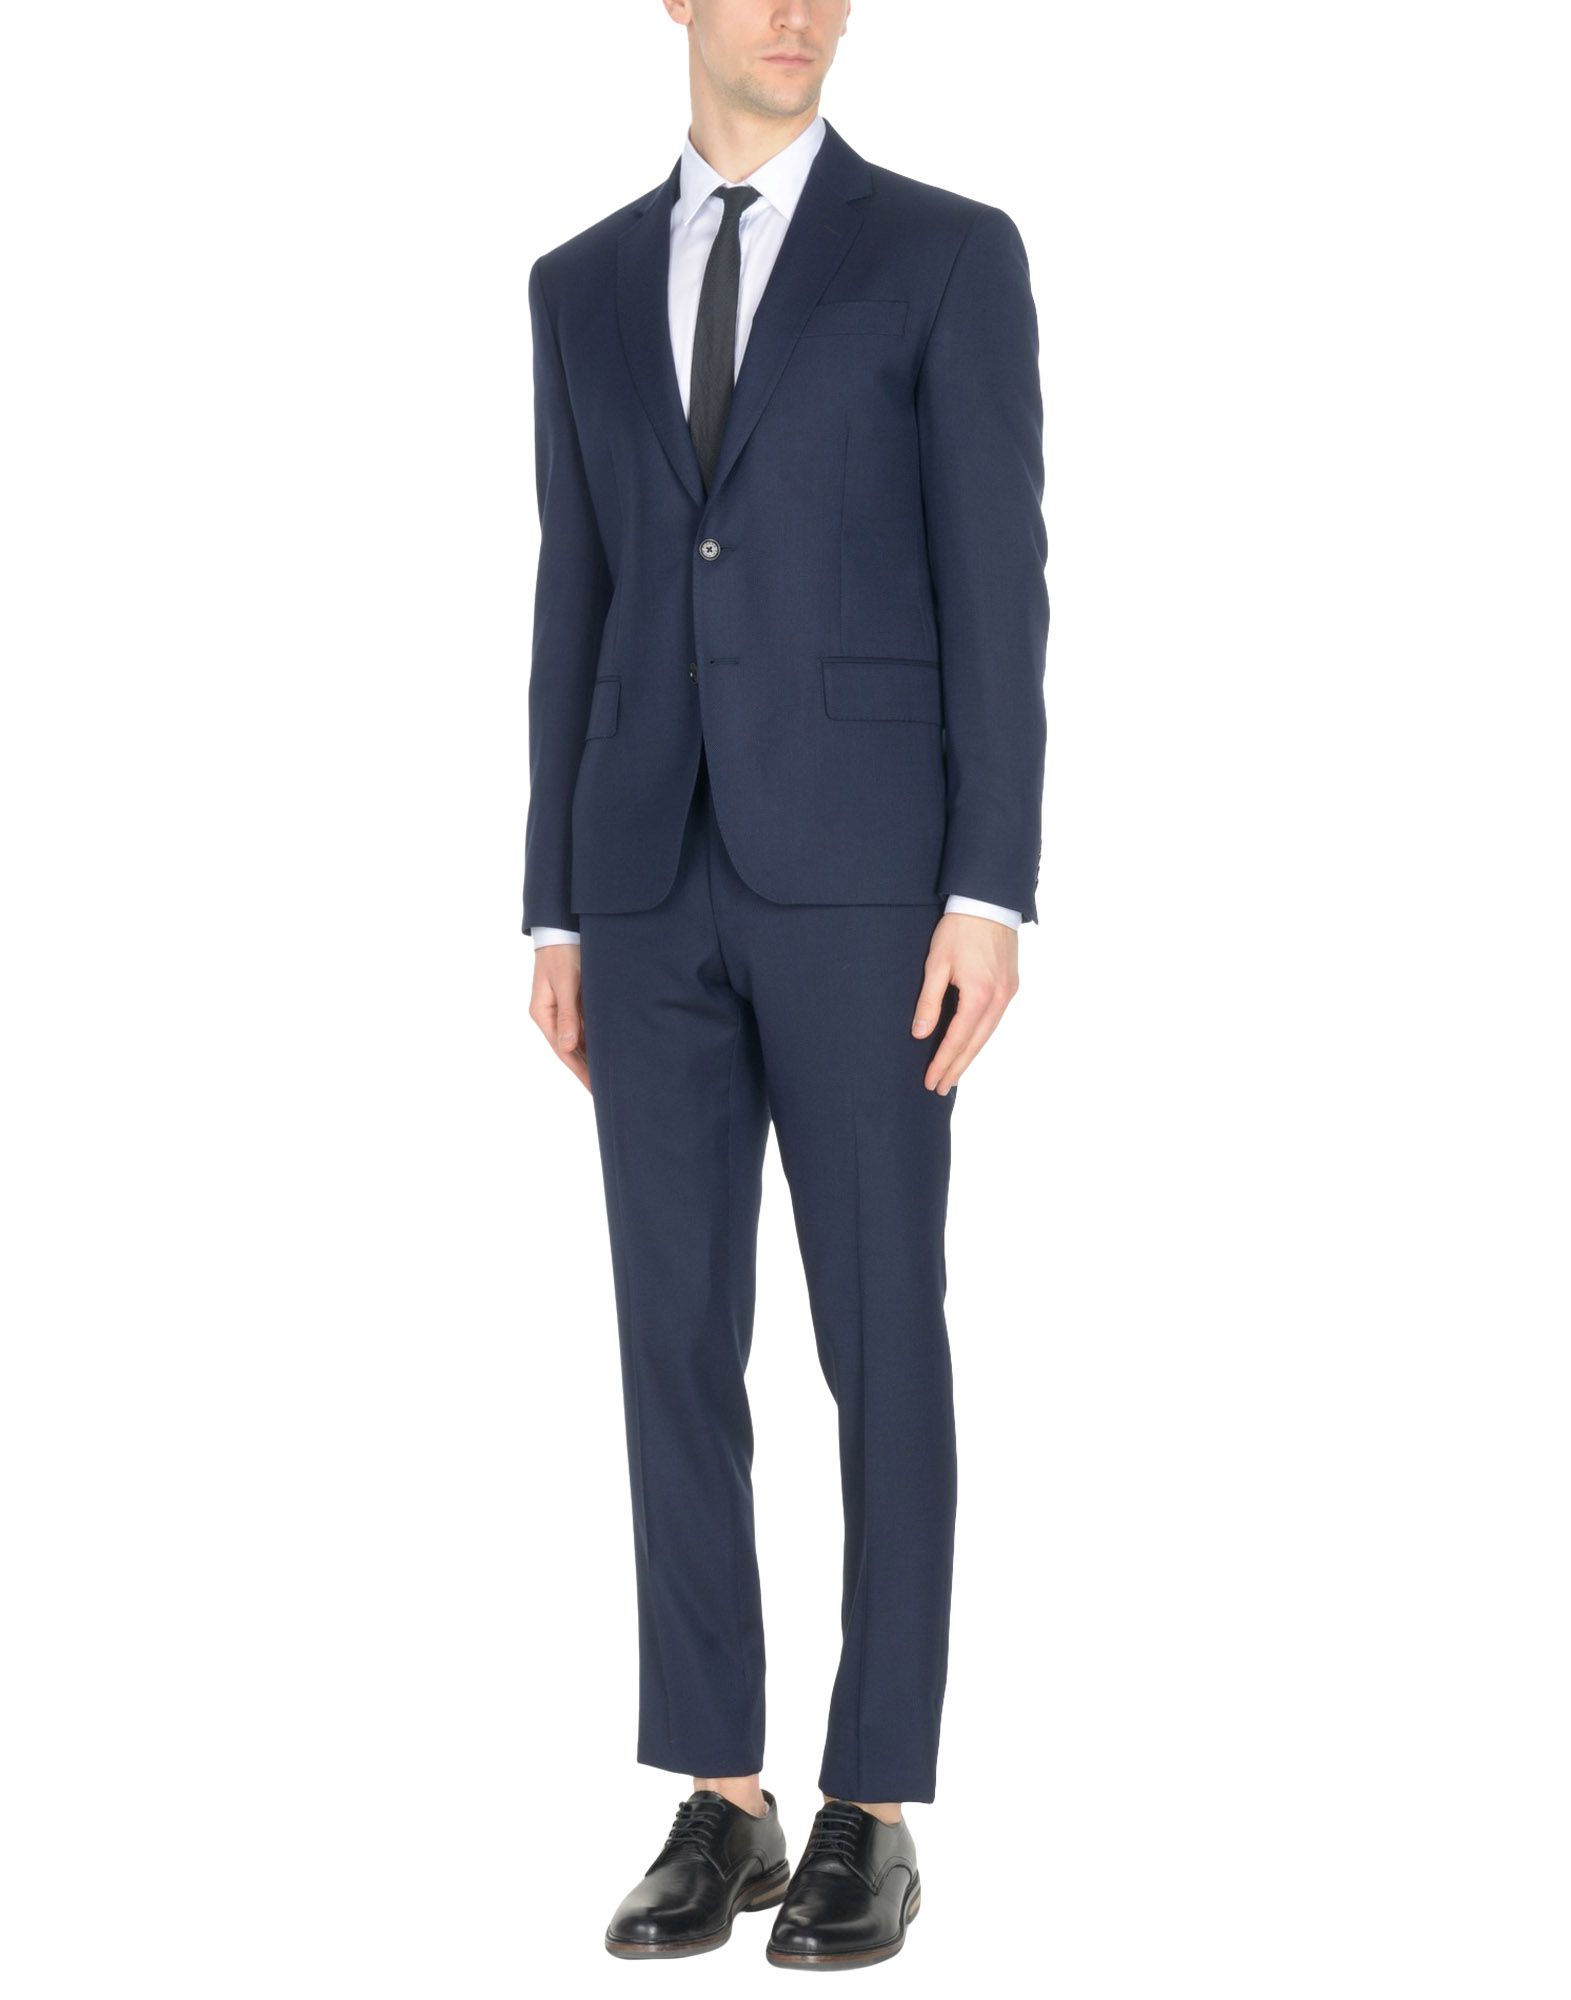 PIERRE BALMAIN Suits,49368598WC 3